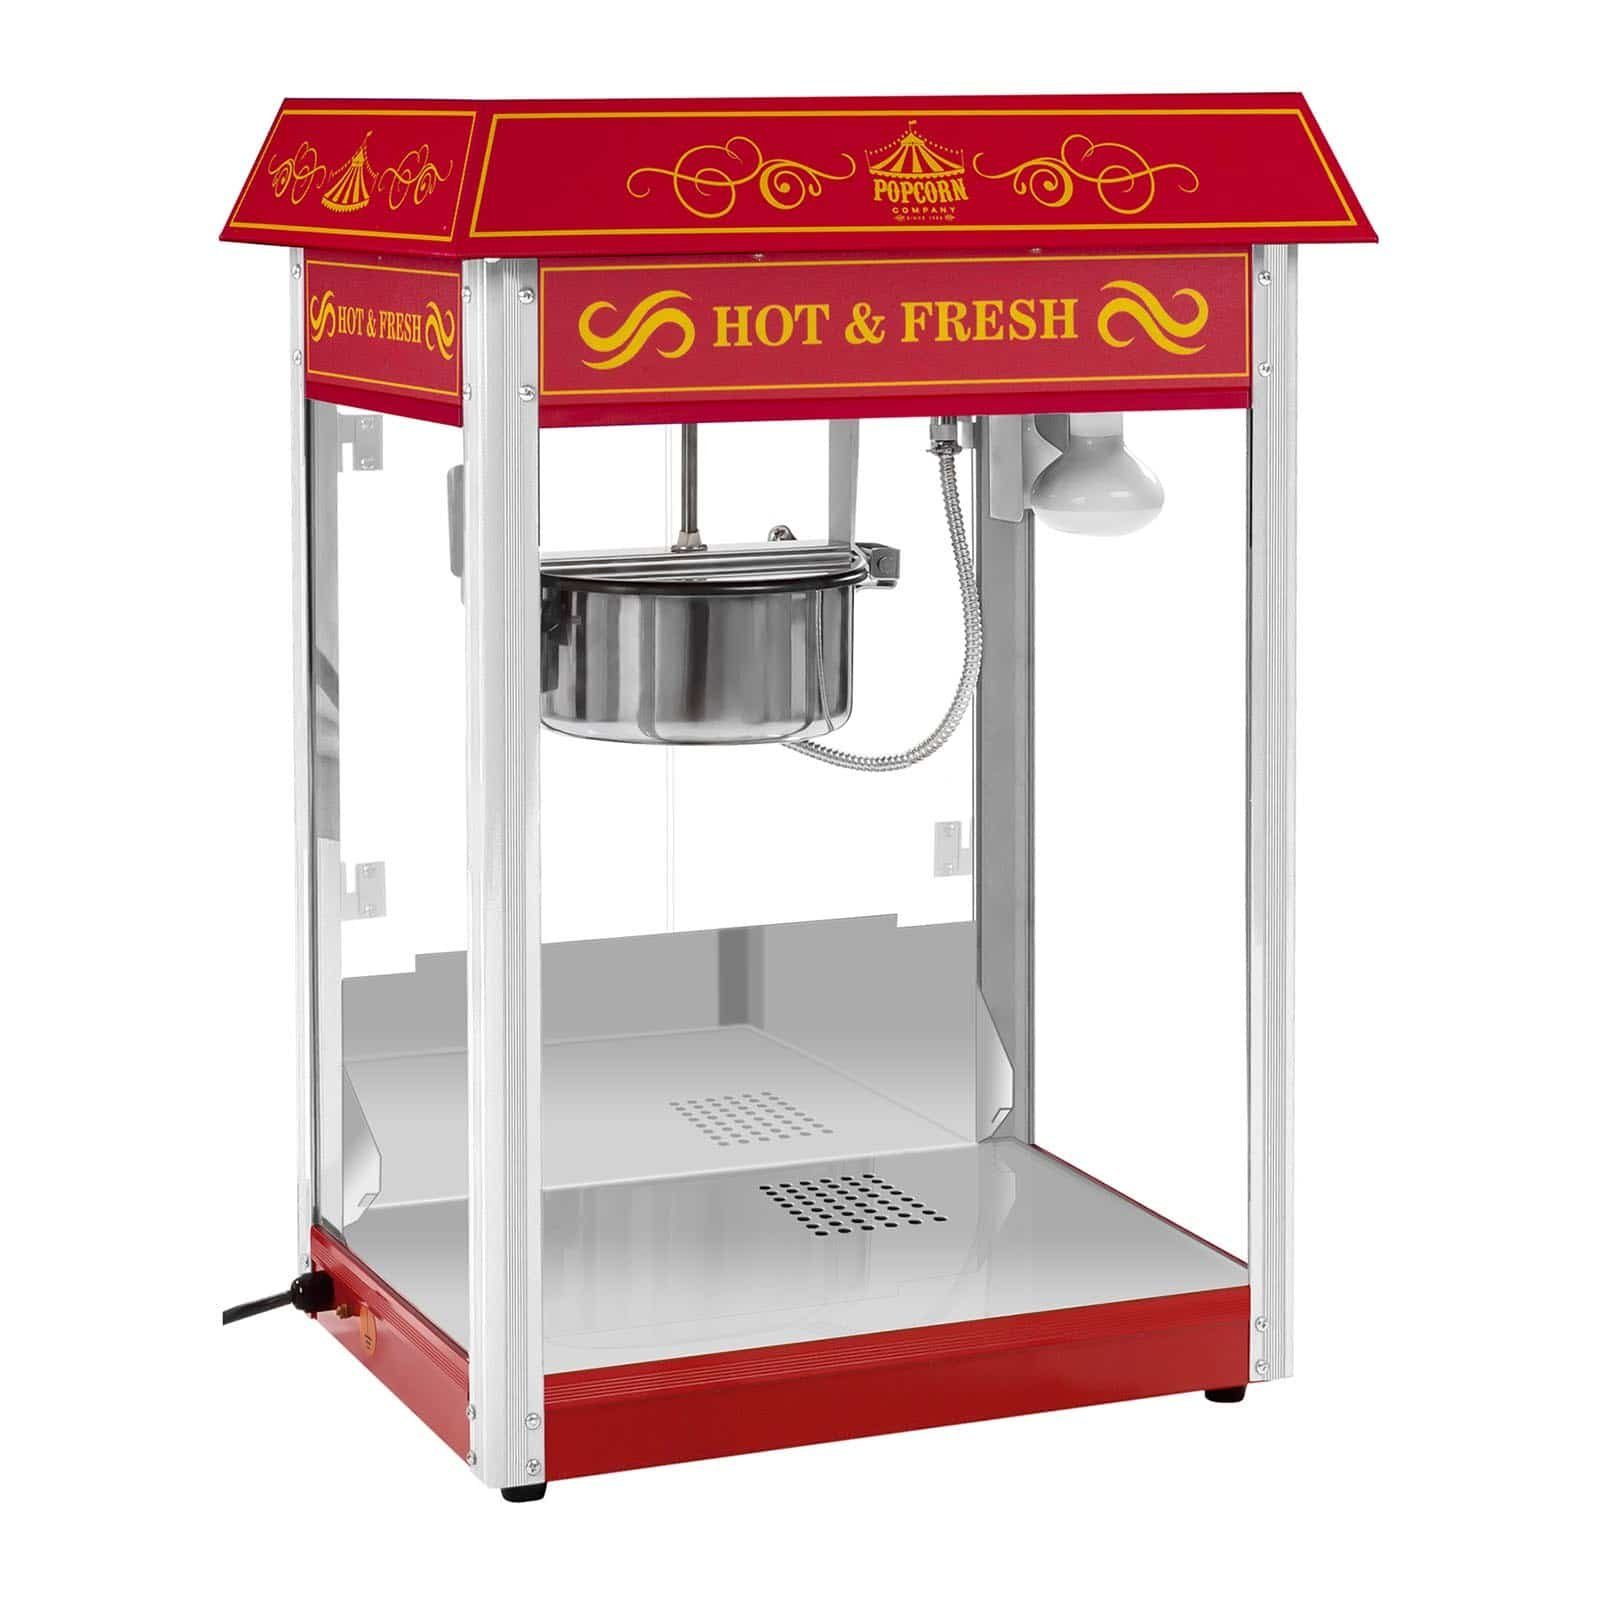 Royal Catering Popcornmaschine Popcornmaschine Popcornautomat Popcorn Maschine Popcornmaker Us Design